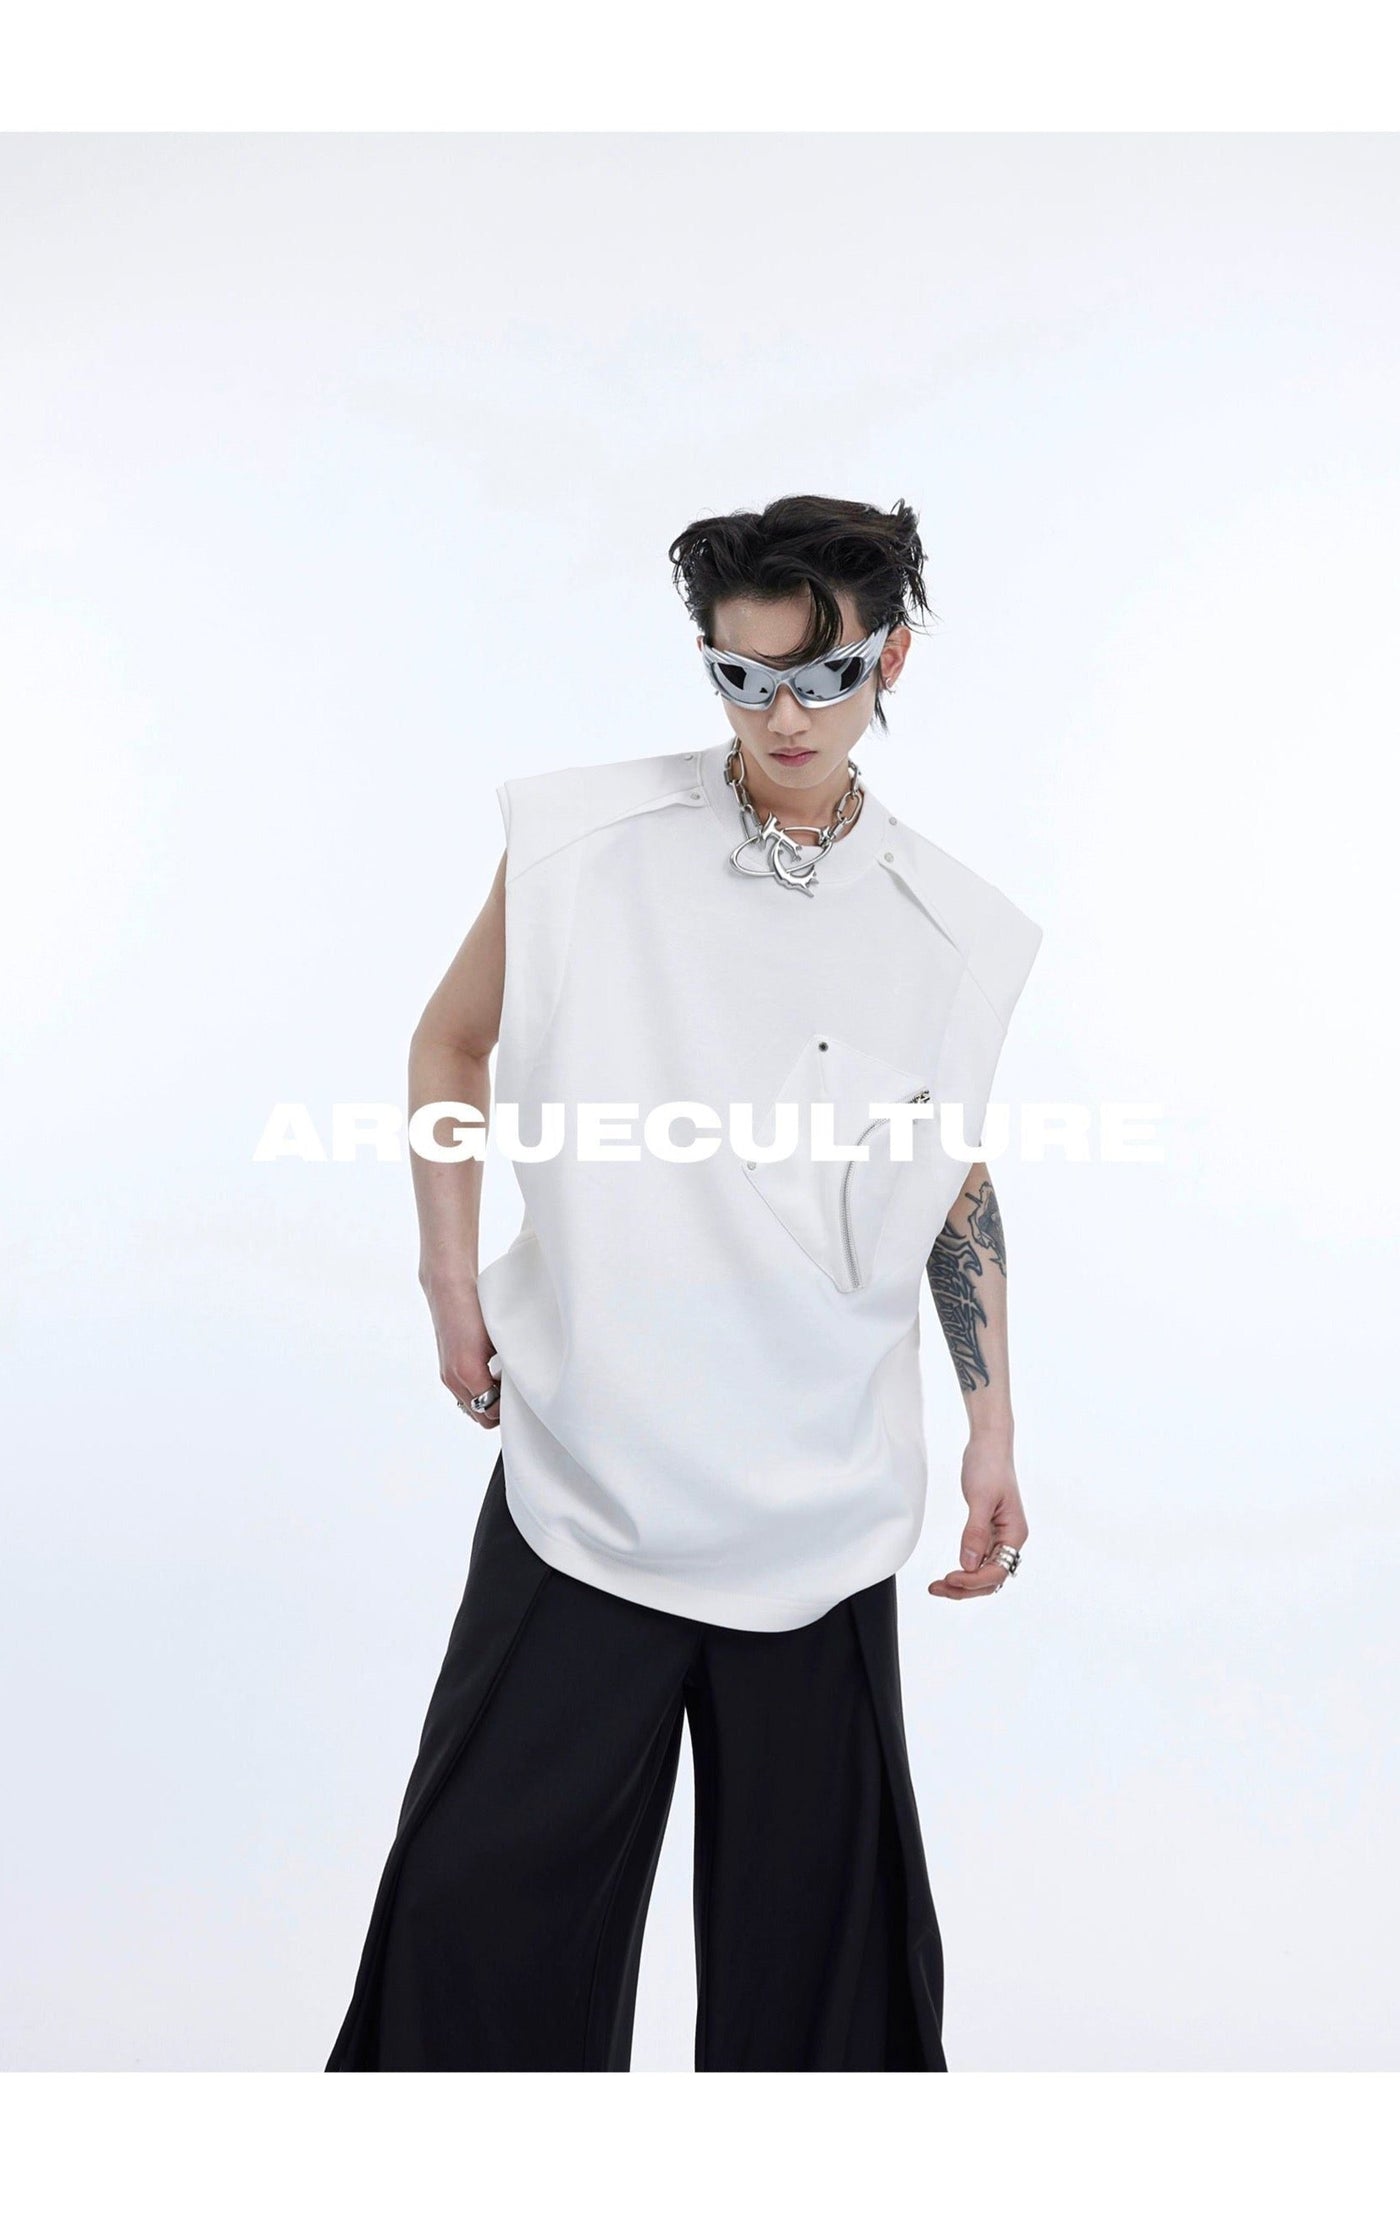 Irregular Pocket Detail Vest Korean Street Fashion Vest By Argue Culture Shop Online at OH Vault